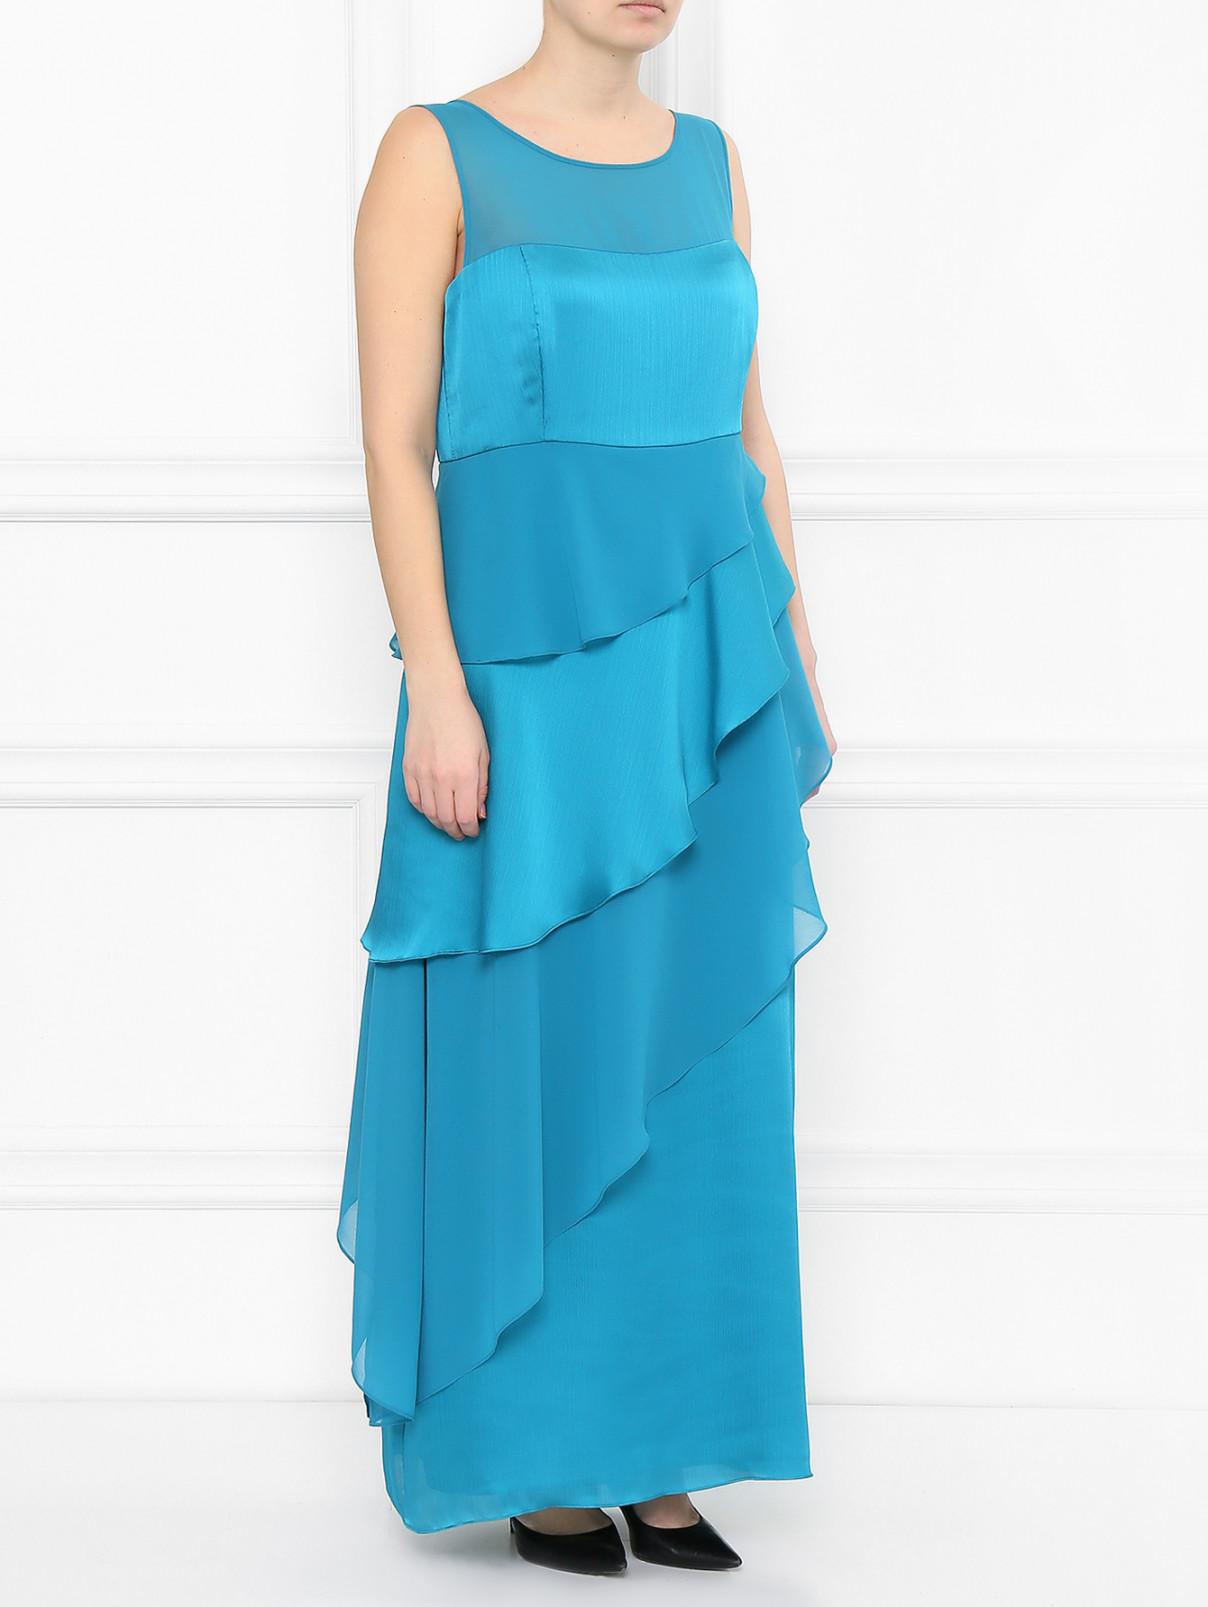 Платье-макси с накидкой в комплекте Marina Rinaldi  –  Модель Общий вид  – Цвет:  Синий